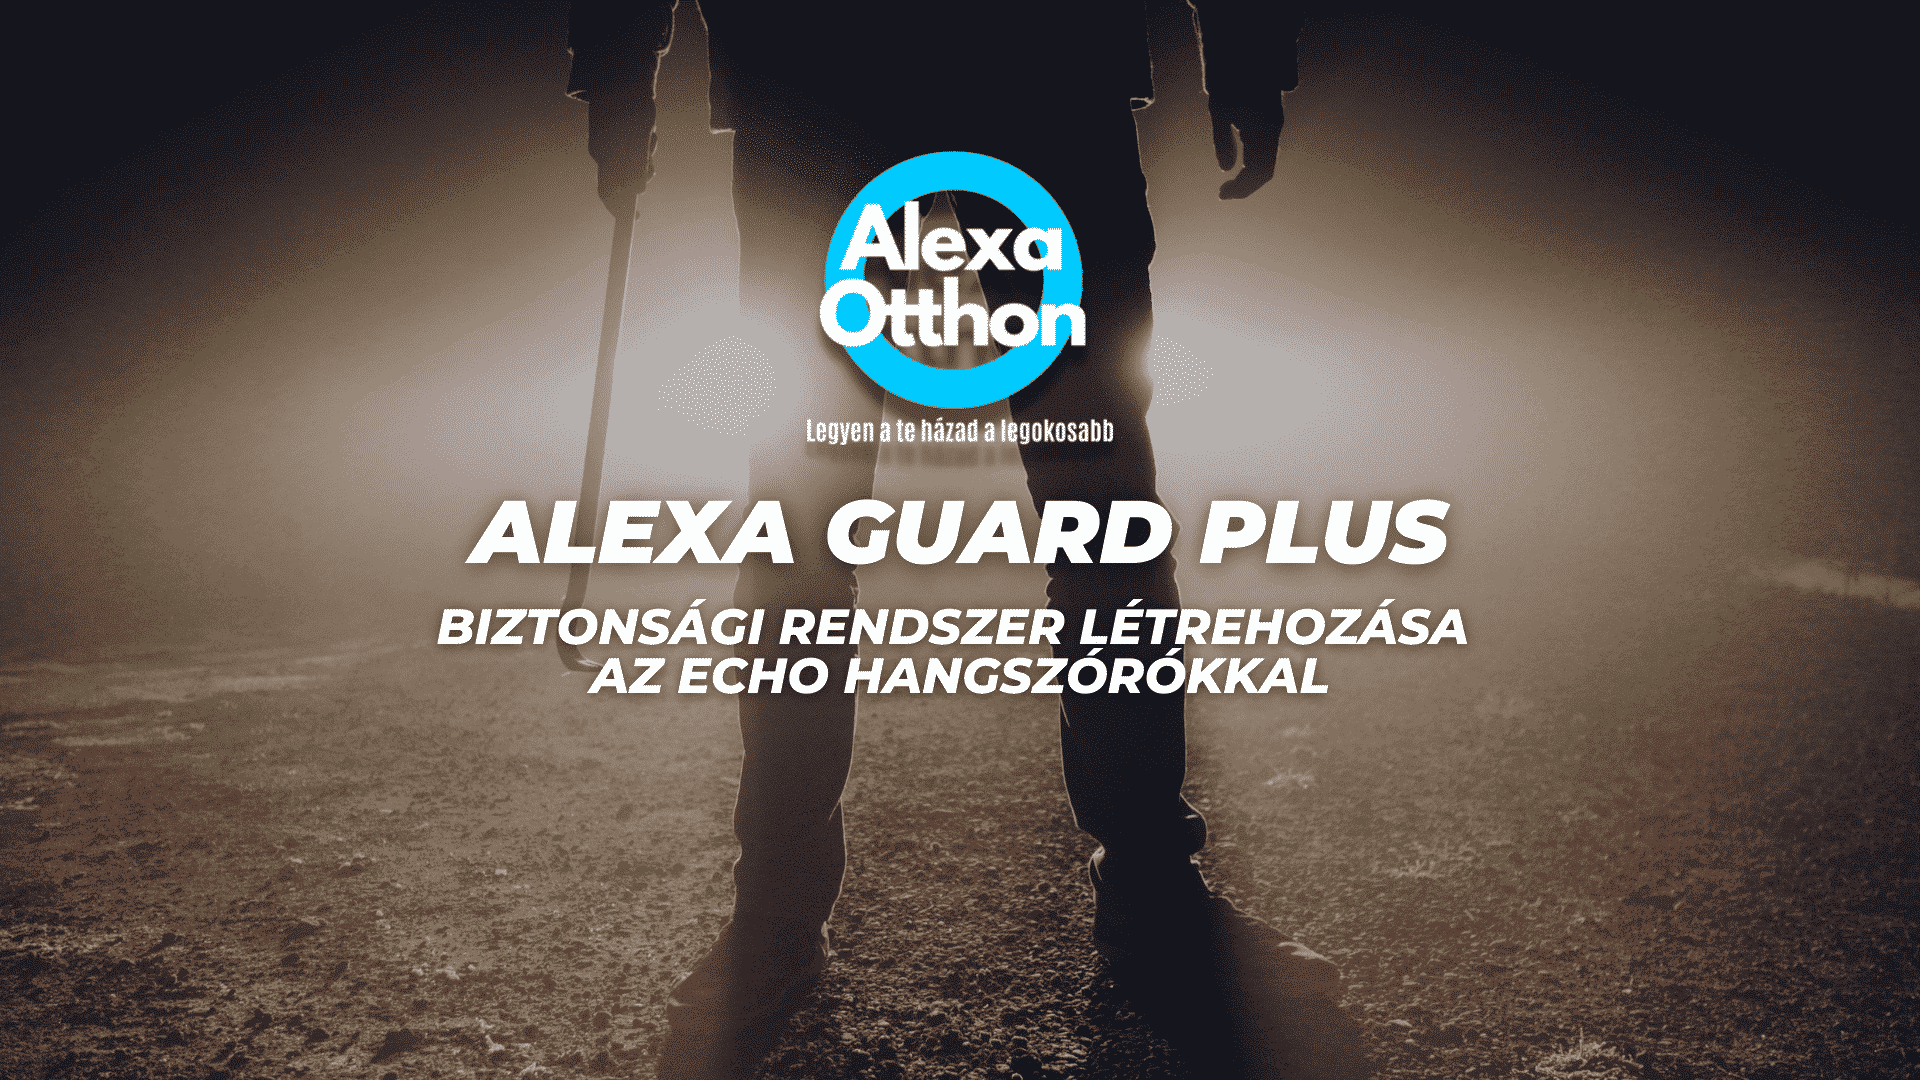 Alexa Guard Plus: Biztonsági rendszer létrehozása az Echo hangszórókkal